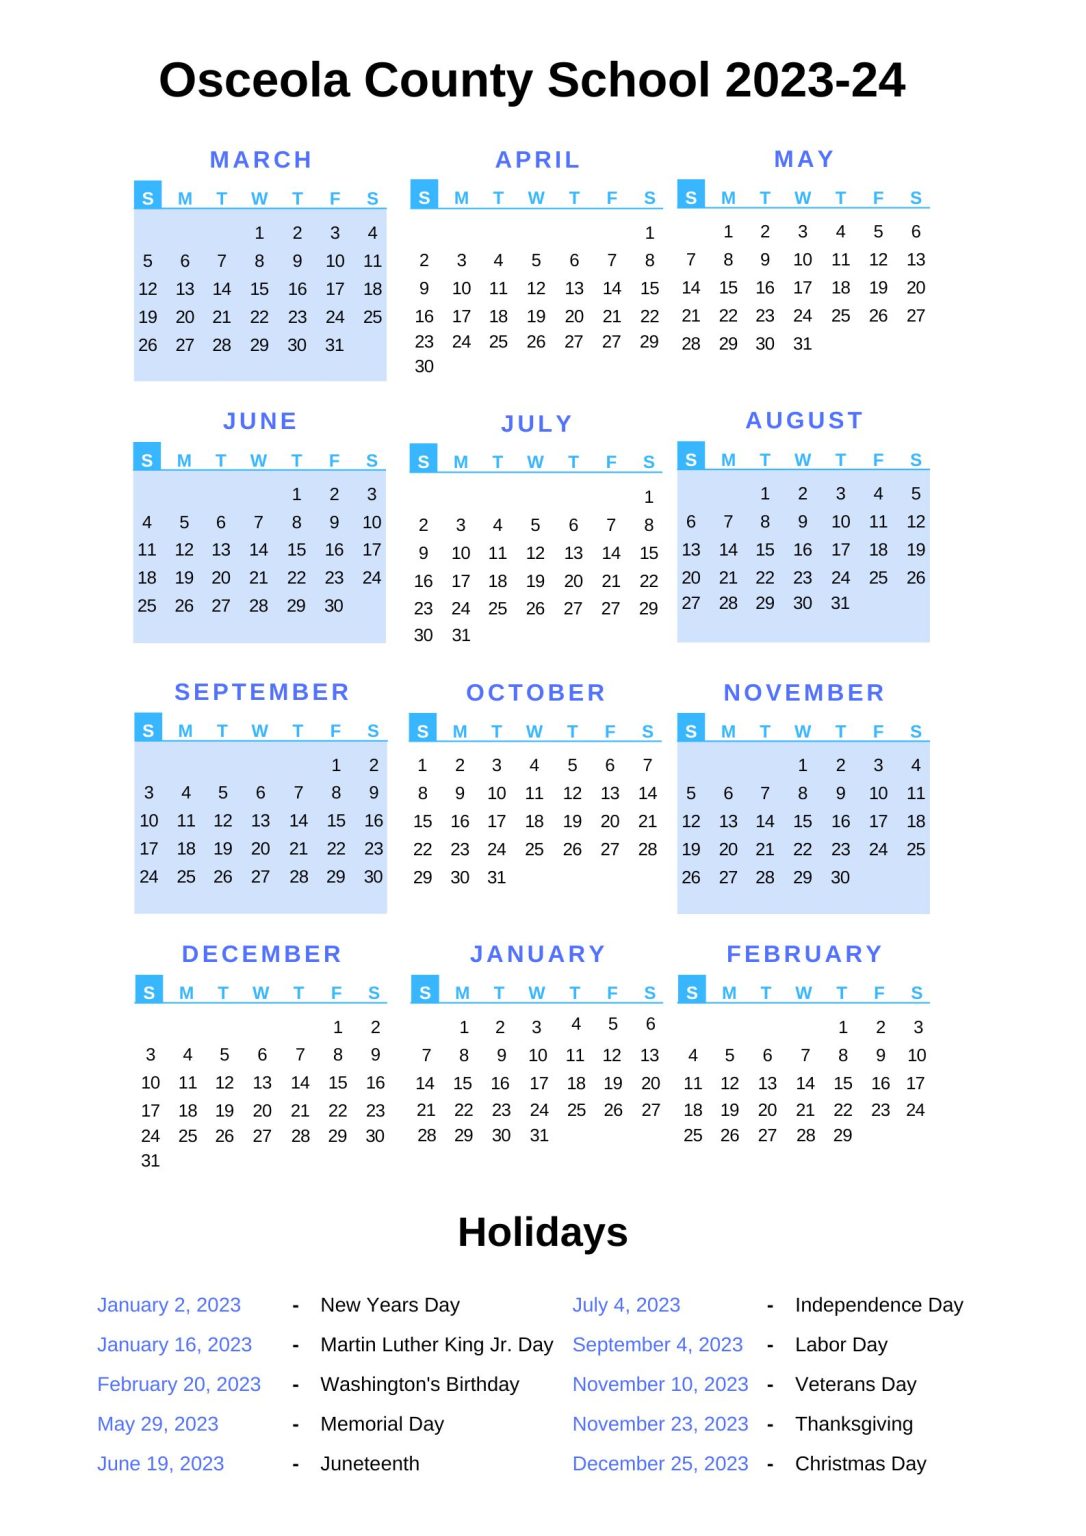 Osceola County School Calendar 2023 24 With Holidays